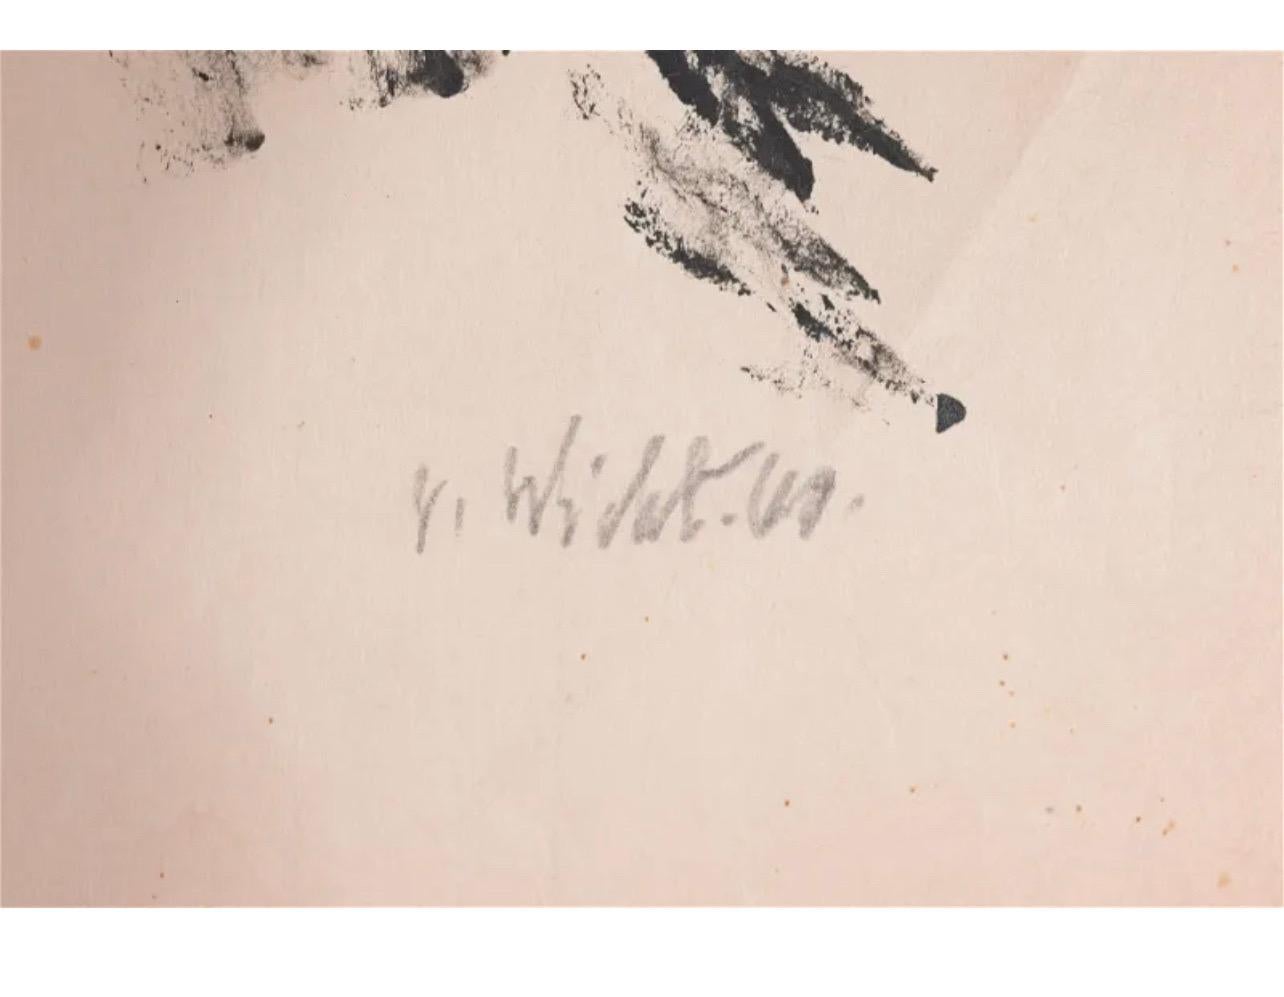 John von Wicht (américain, 1888-1970) 
Huile sur papier de riz japonais. Signé et daté au crayon en bas à droite. 
Taille de la feuille : 21 x 29.25 in. 

Johannes Von Wicht est né à Holstein, en Allemagne, le 3 février 1888. Sa mère a déménagé la